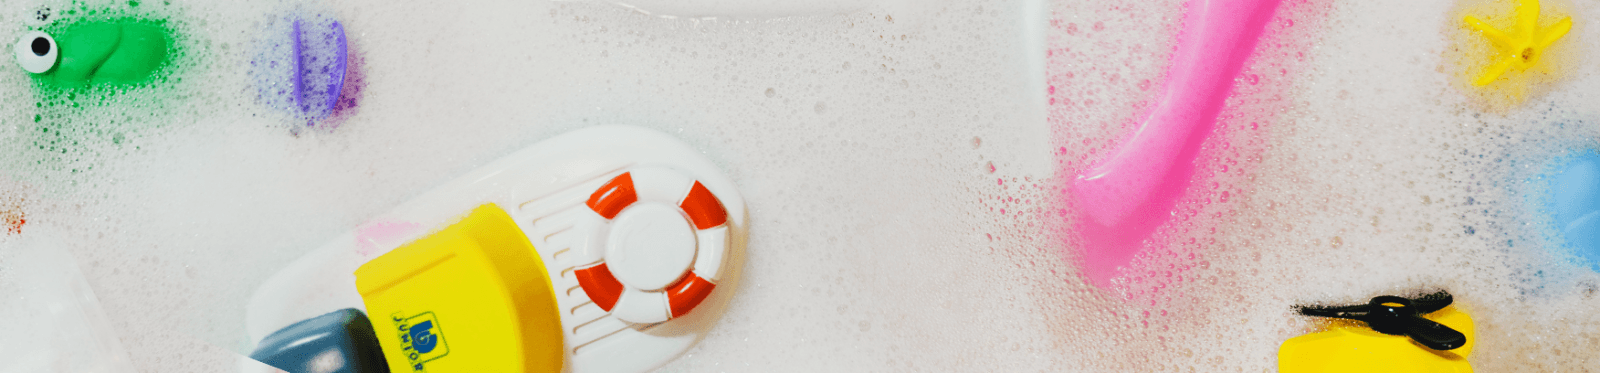 Hračky do vany: Jak pečovat o hračky, aby nepoškozovaly zdraví dětí?